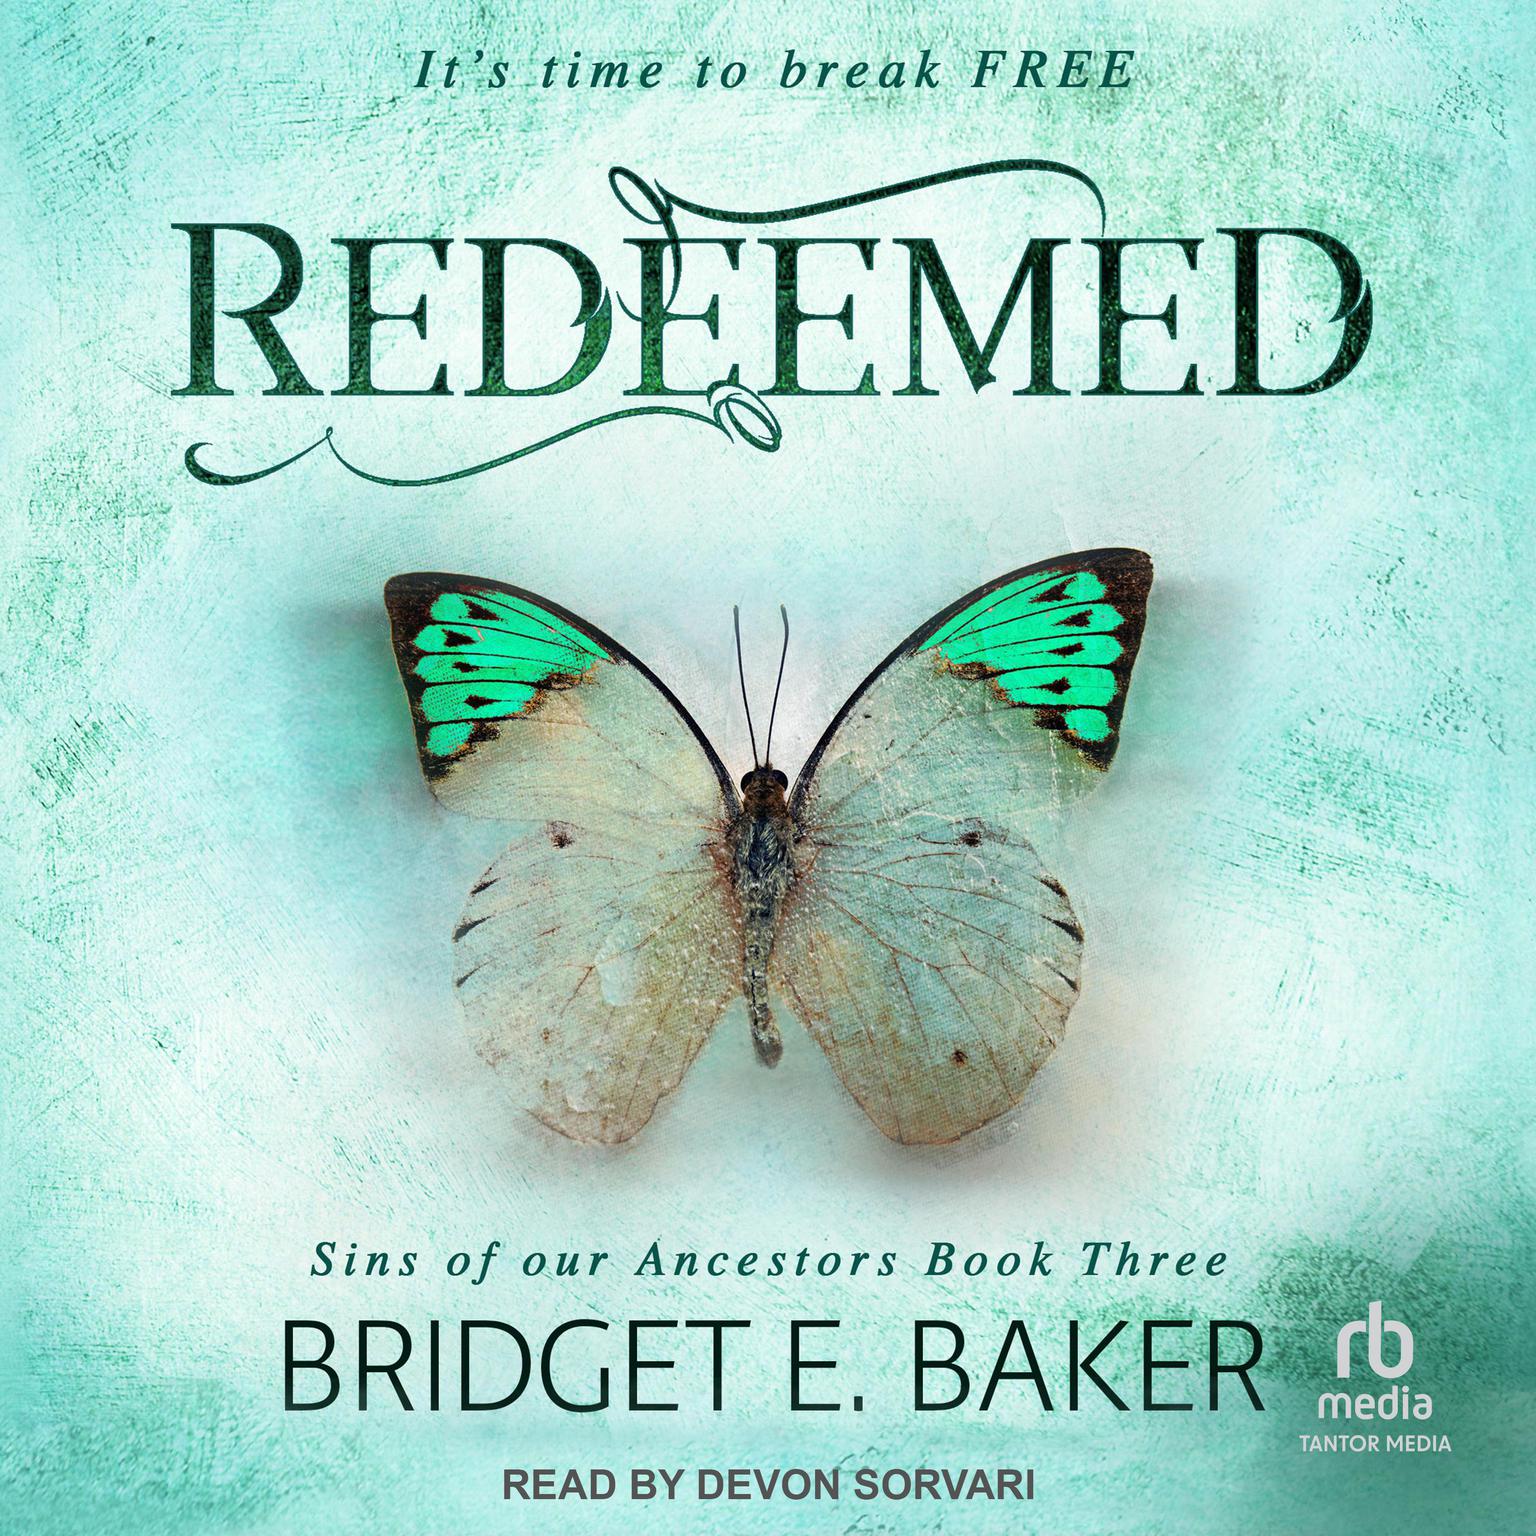 Redeemed Audiobook, by Bridget E. Baker